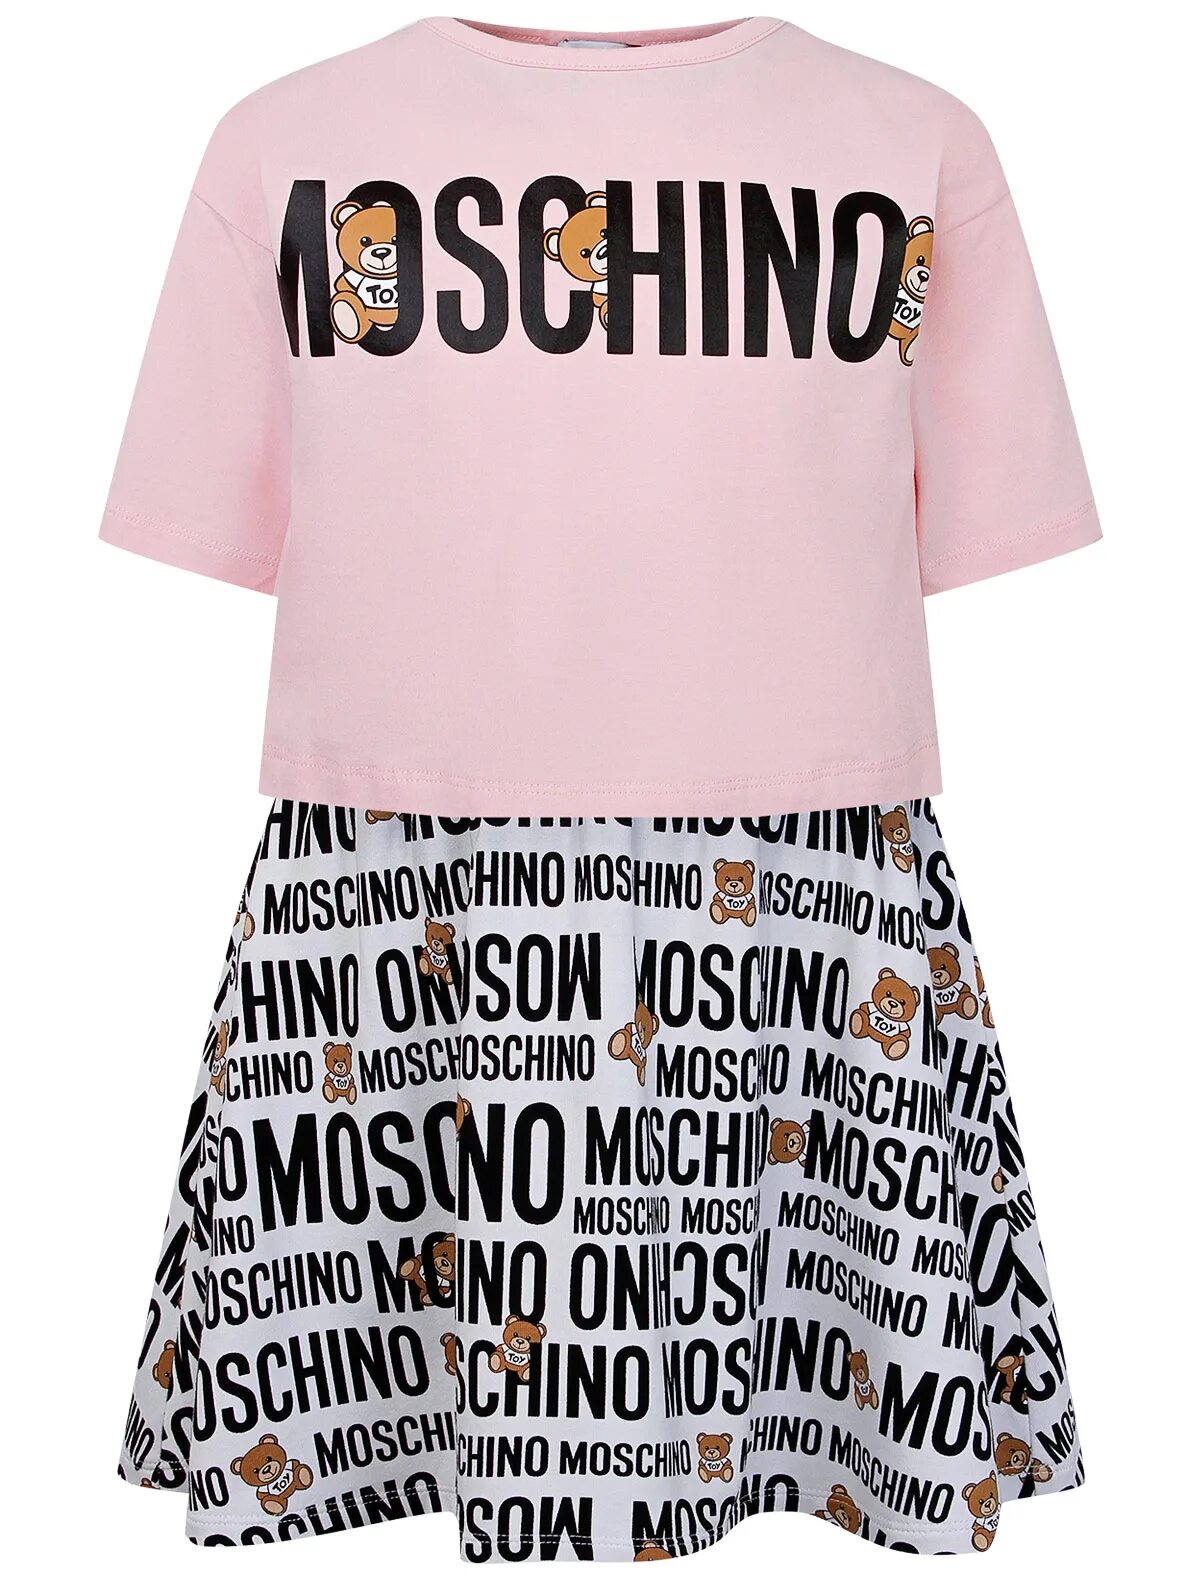 Костюм Москино. Платье Moschino. Москино бренд одежды. Детская брендовая одежда Moschino.